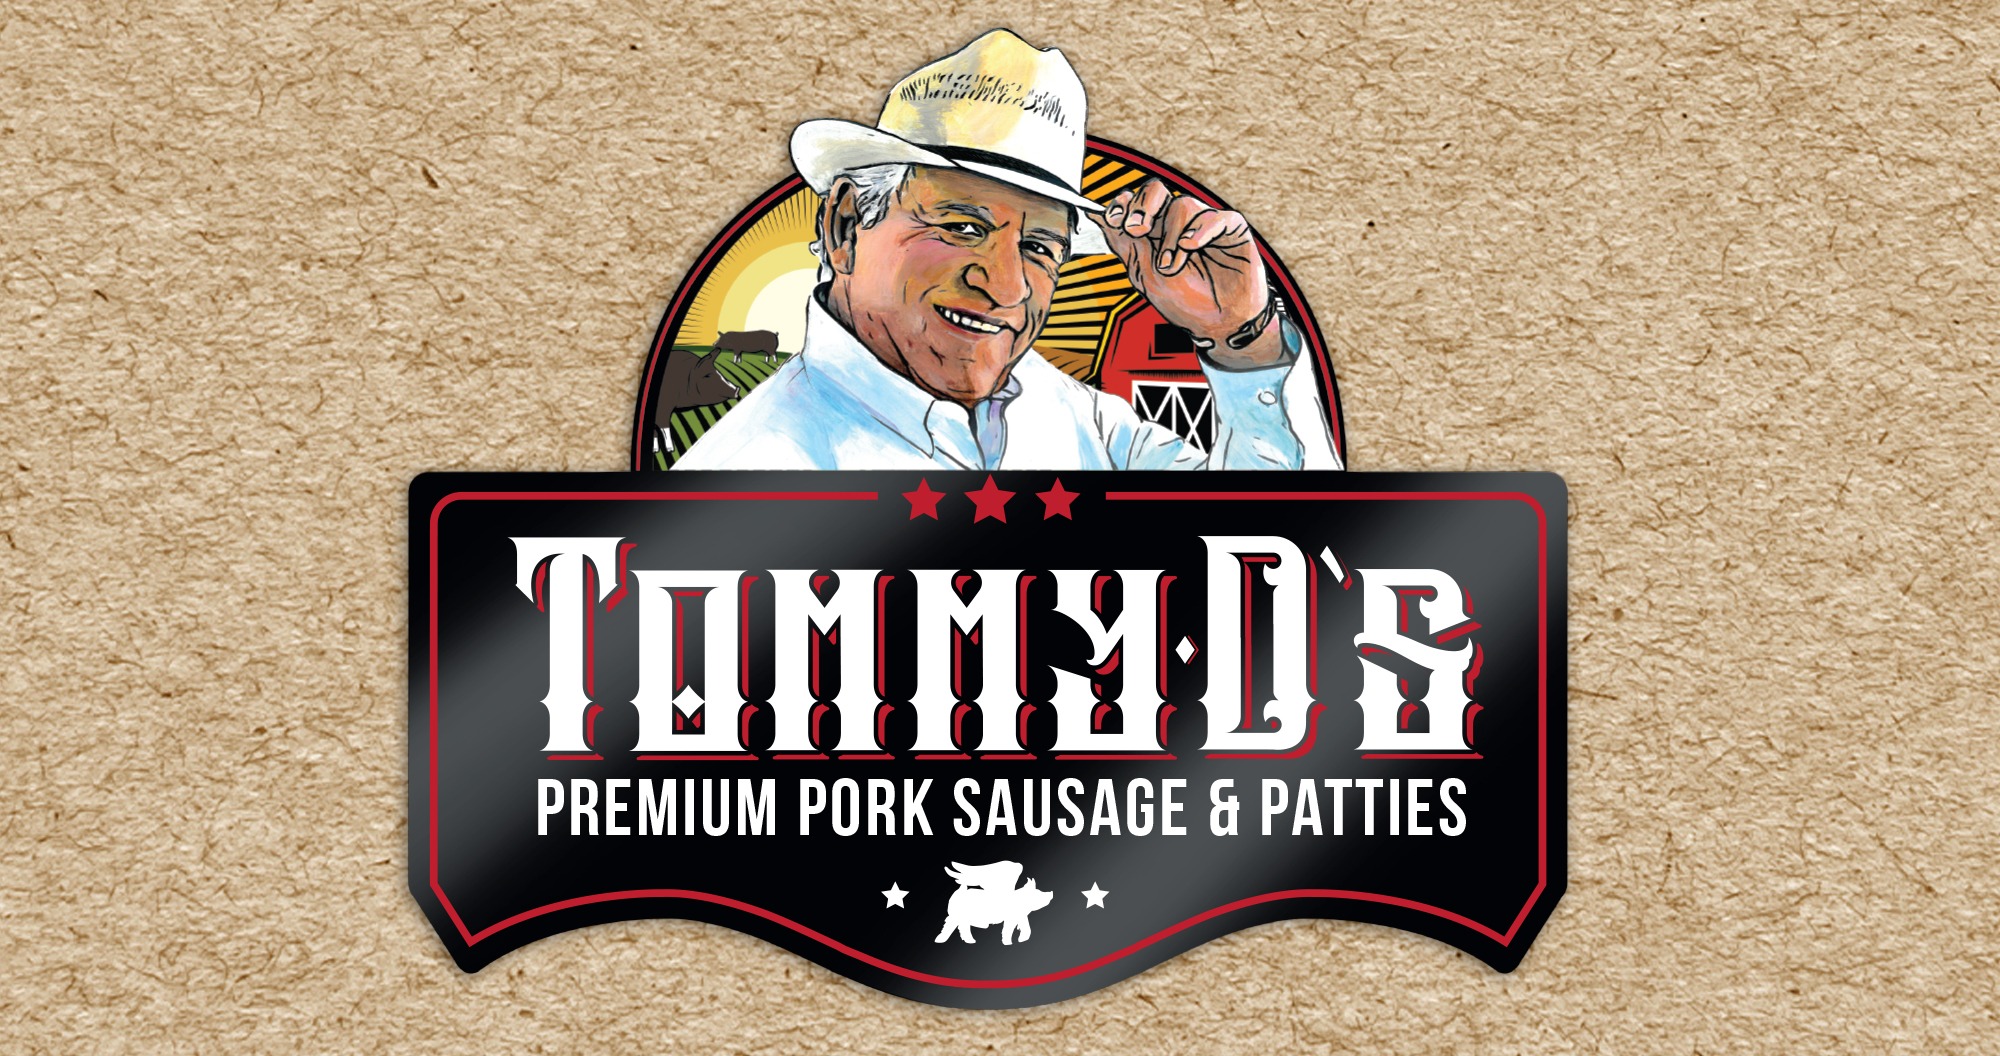 Tommy D's Logo Design, Illustration by Octane Advertising Design